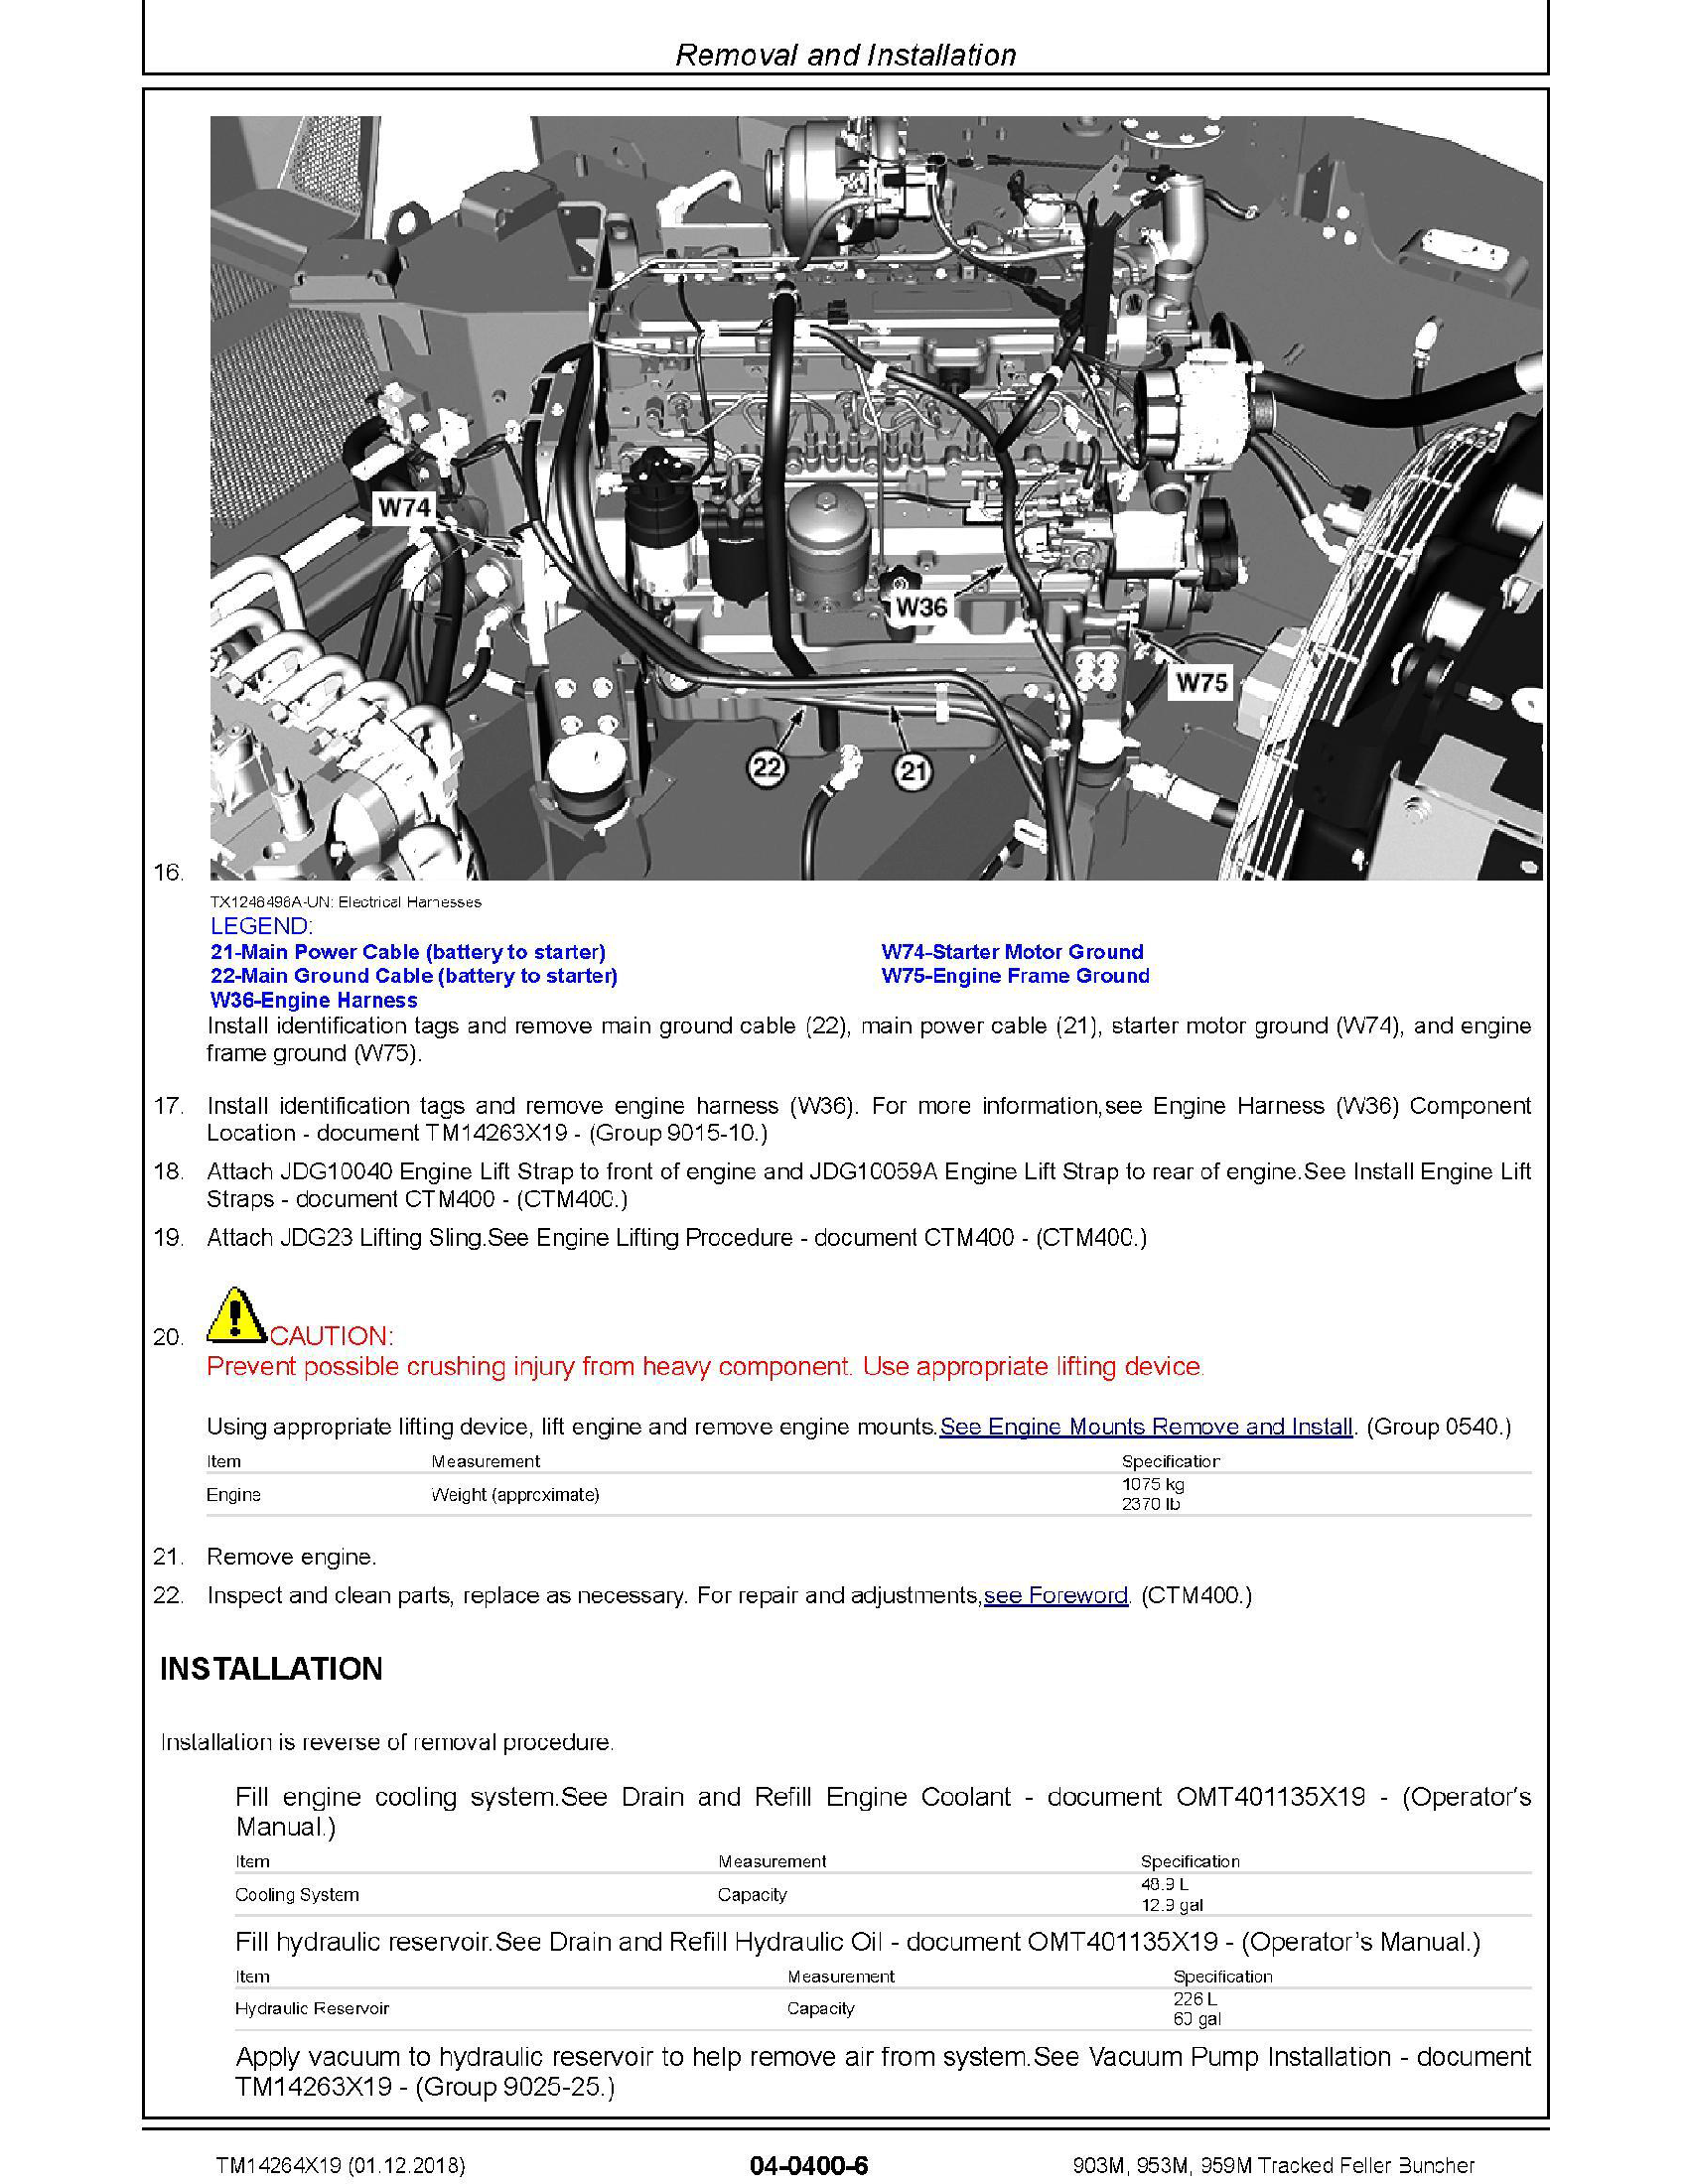 John Deere 6525 manual pdf